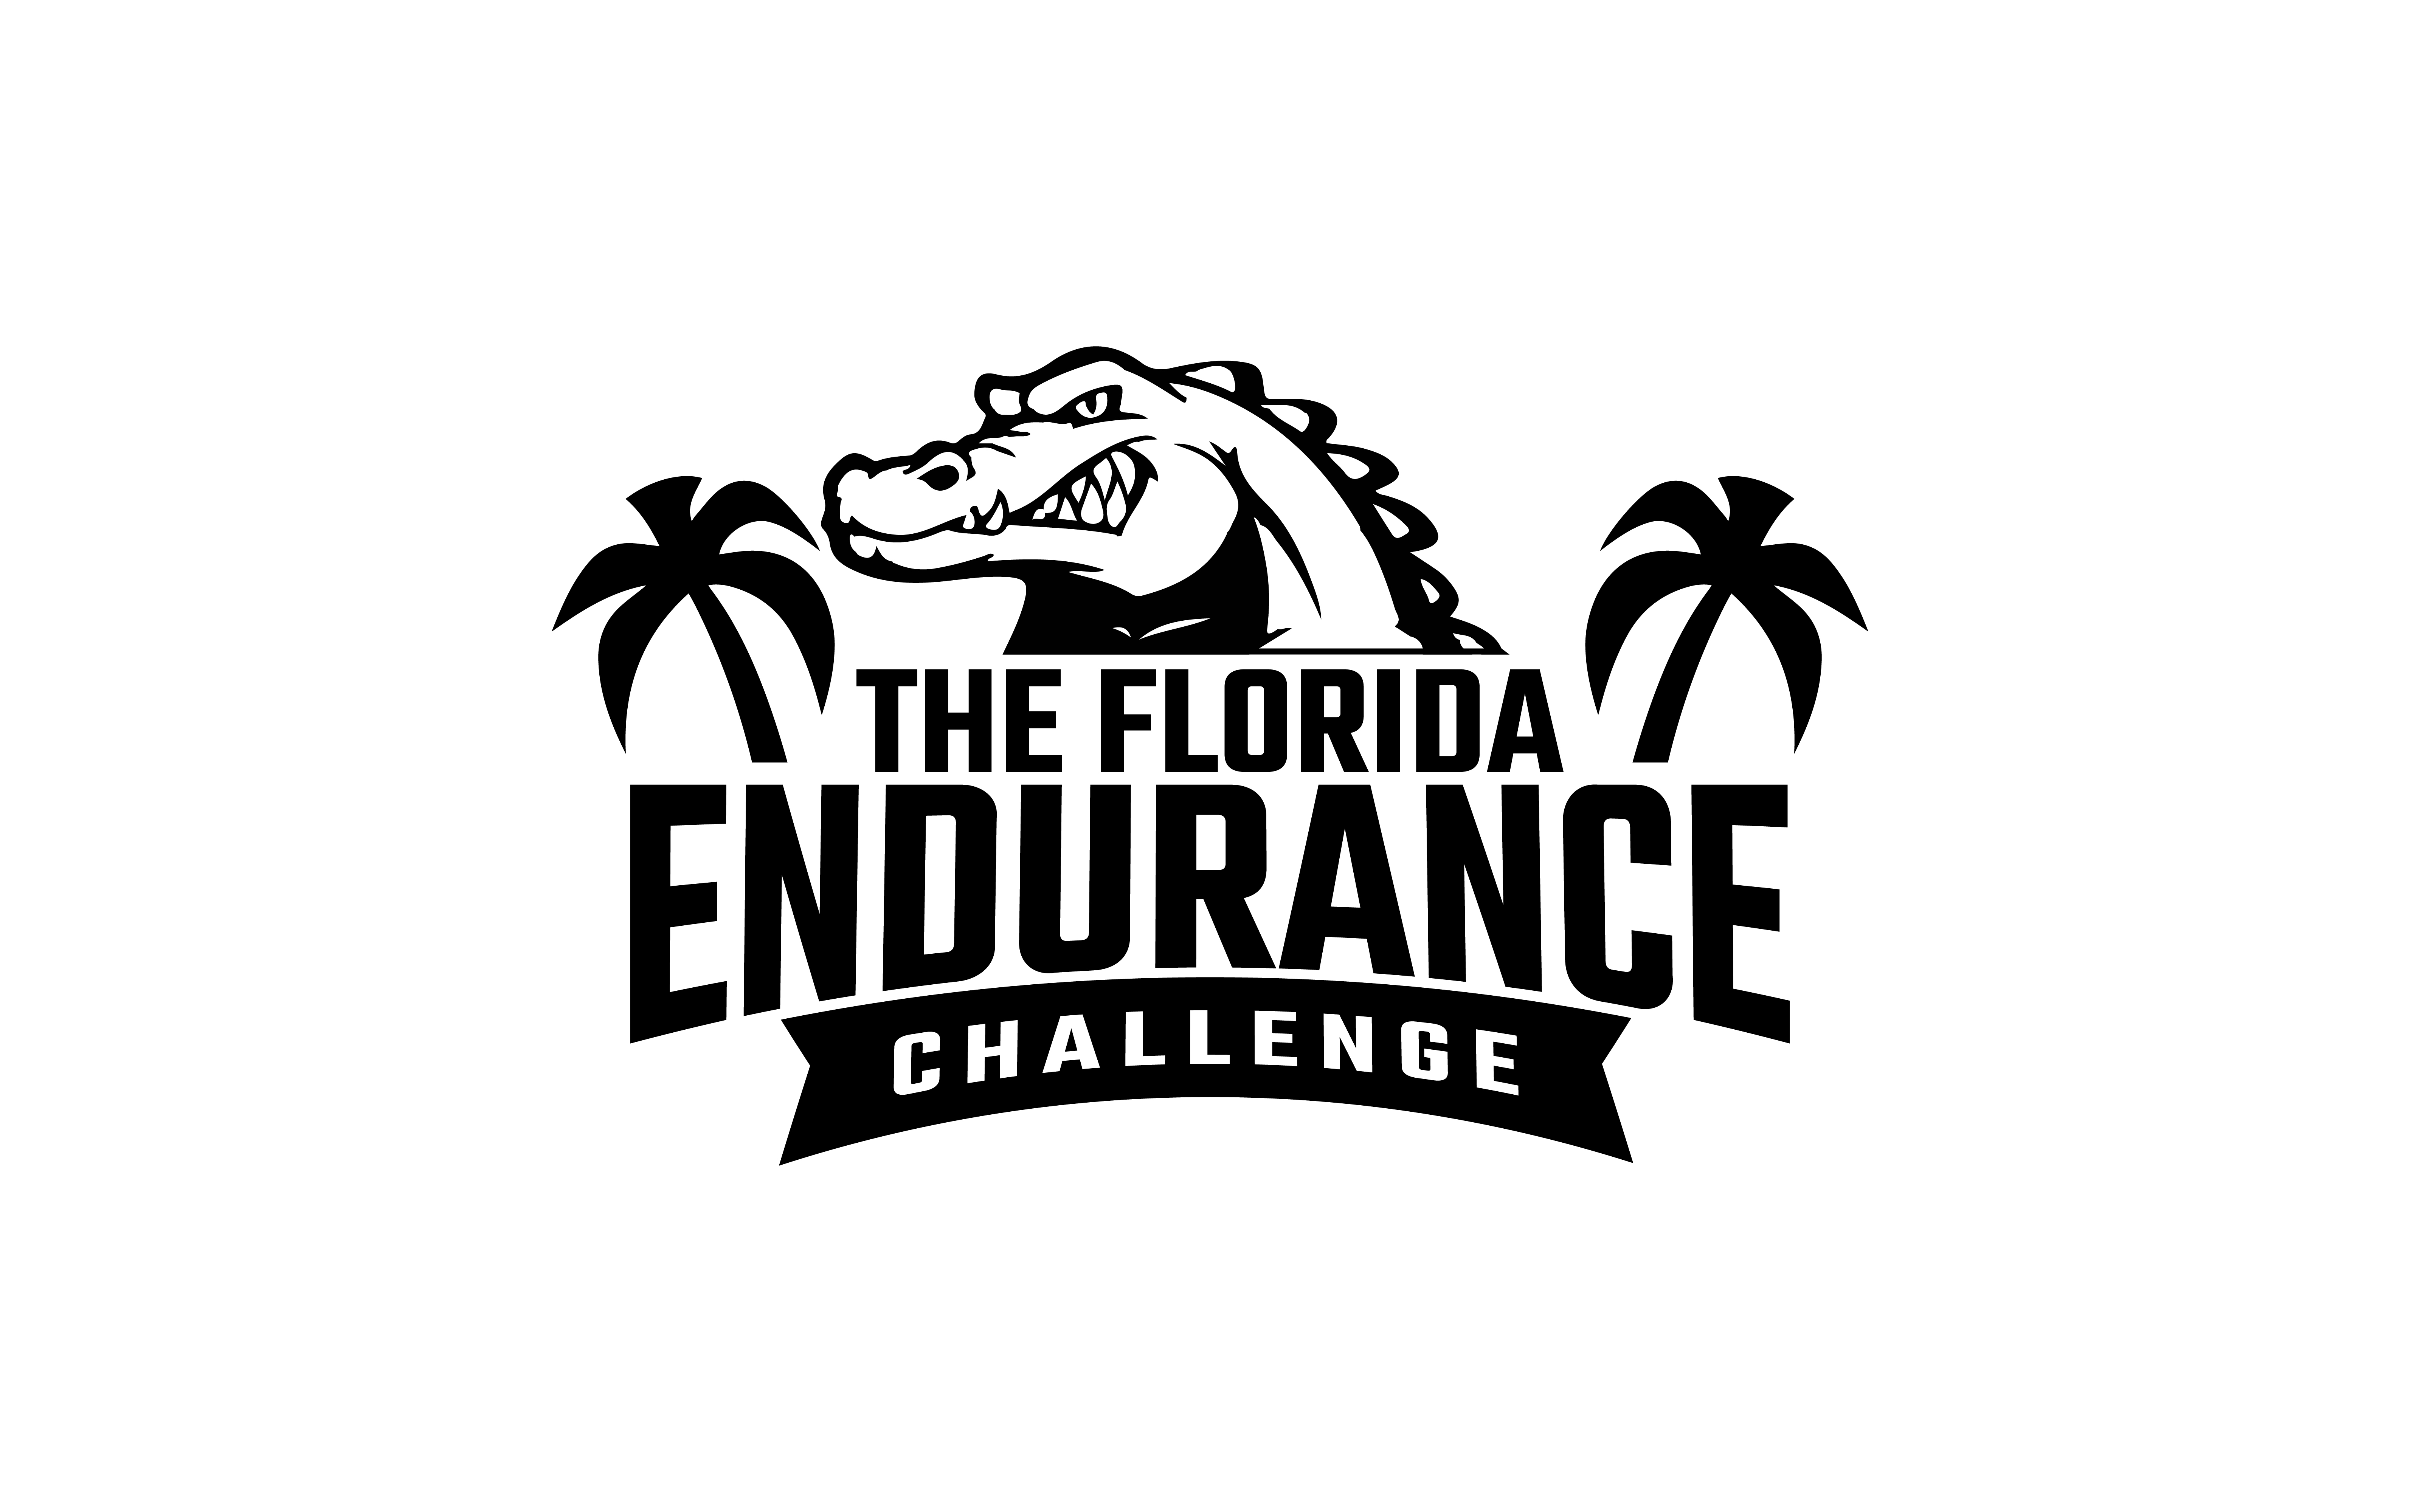 The Florida Endurance Challenge